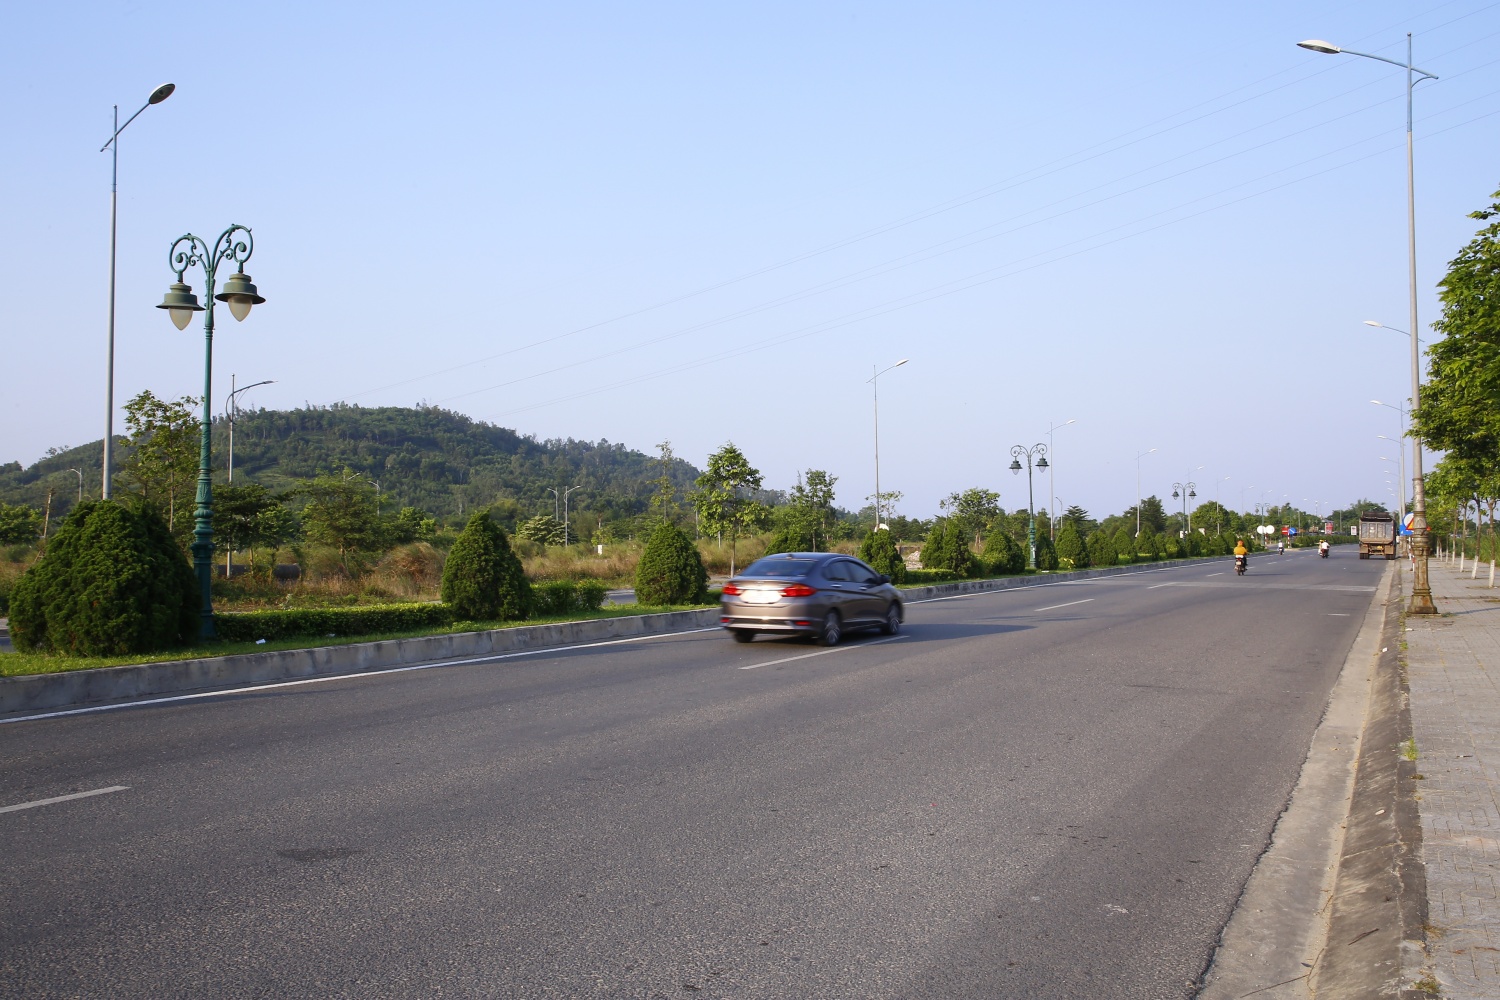 Quảng Ngãi: Dừng lưu thông trên tuyến đường Hoàng Sa để phục vụ sự kiện đặc biệt của tỉnh